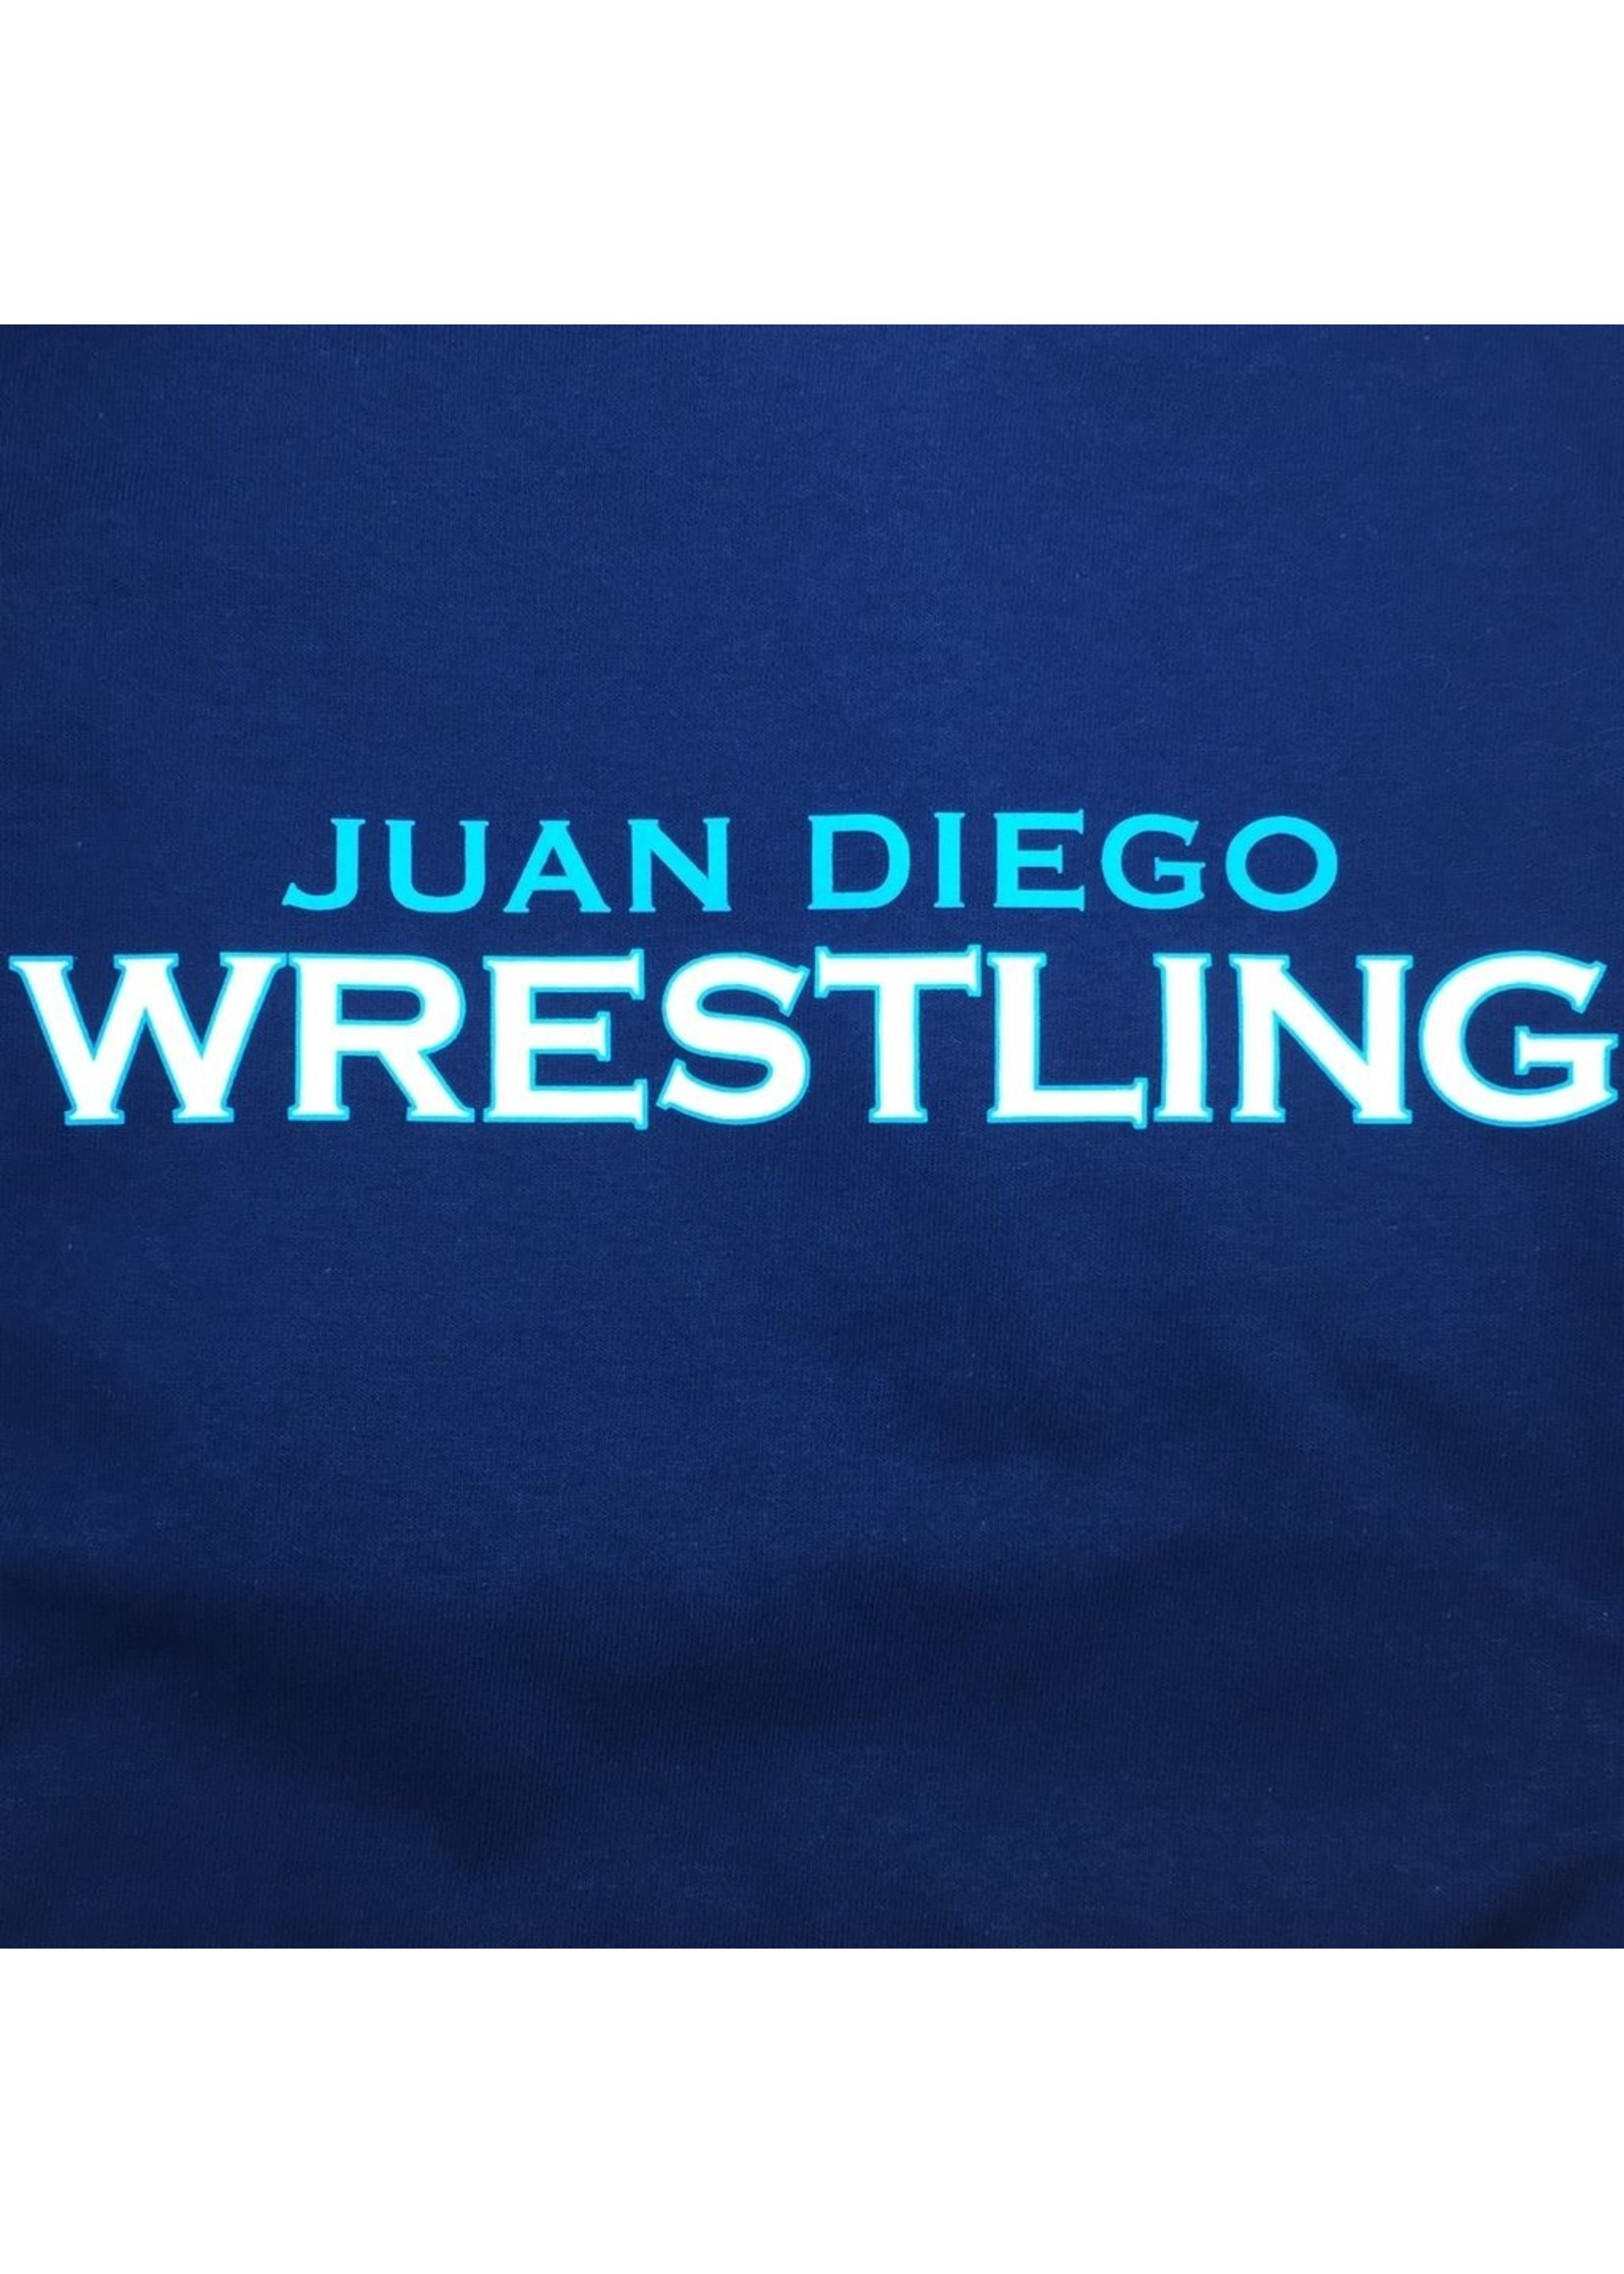 NON-UNIFORM Wrestling, Juan Diego Wrestling Custom Order Navy Unisex s/s t-shirt